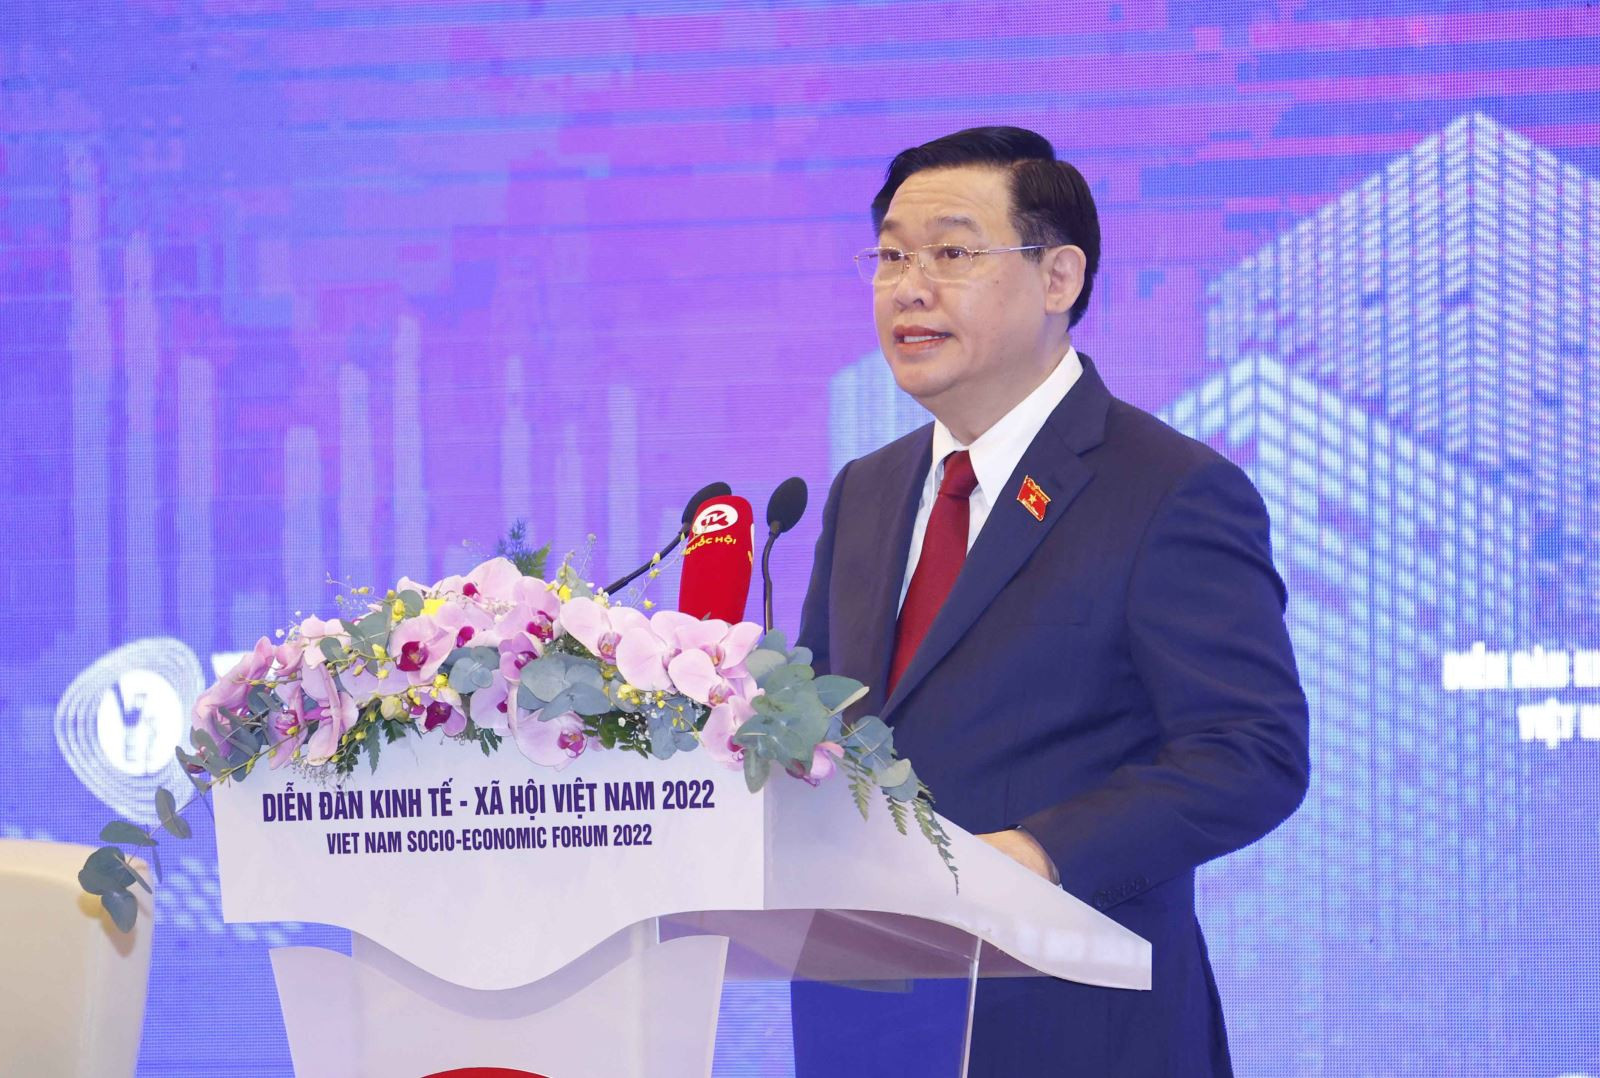 Diễn đàn kinh tế - Xã hội Việt Nam 2022: Củng cố nền kinh tế vĩ mô, thúc đẩy phục hồi và phát triển bền vững